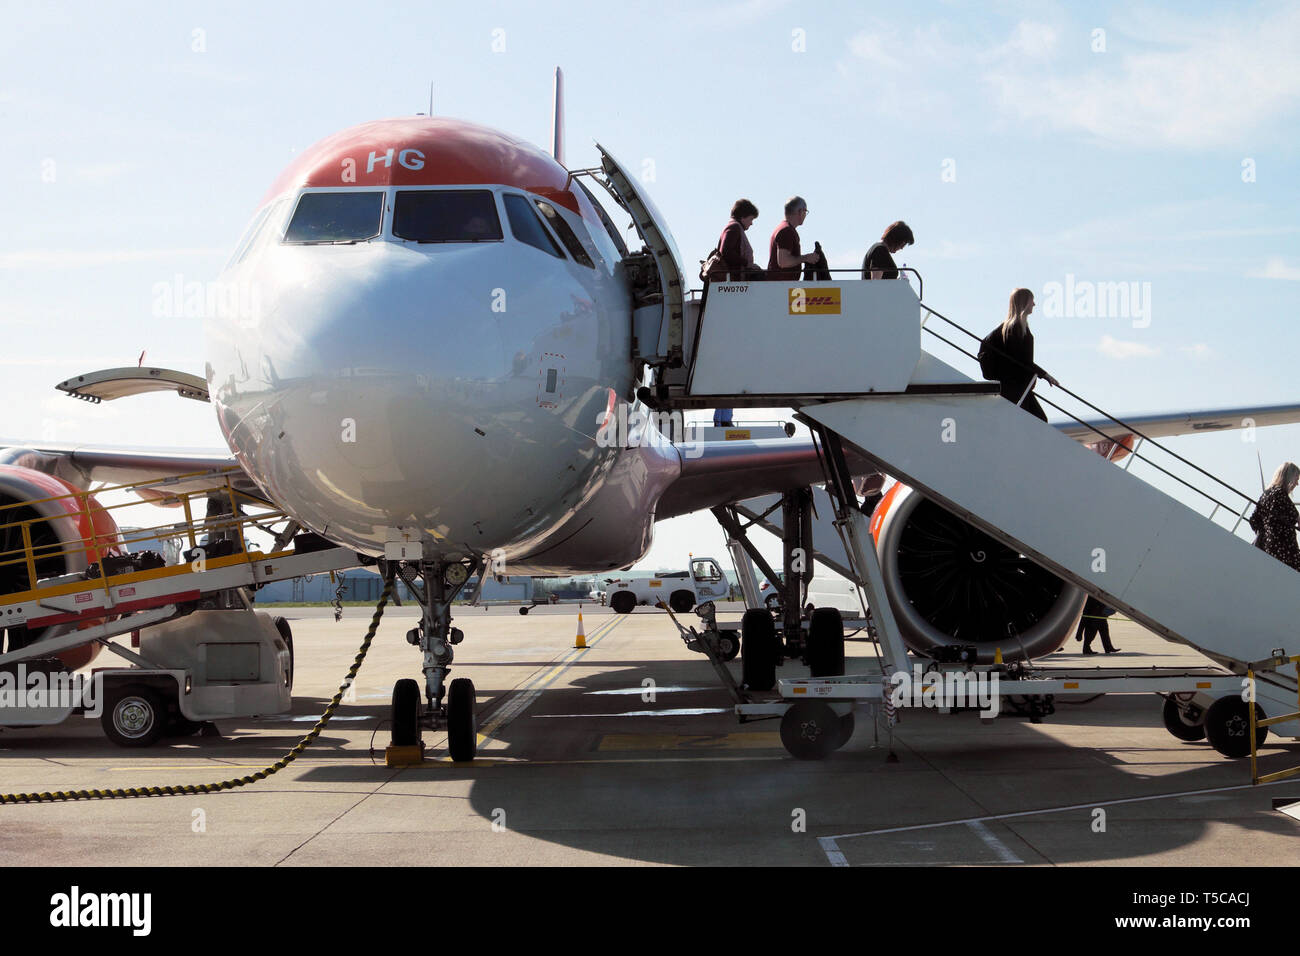 Les passagers en provenance du Portugal en laissant un avion Easyjet debout sur le tarmac de l'aéroport de Bristol England UK Grande-bretagne KATHY DEWITT Banque D'Images